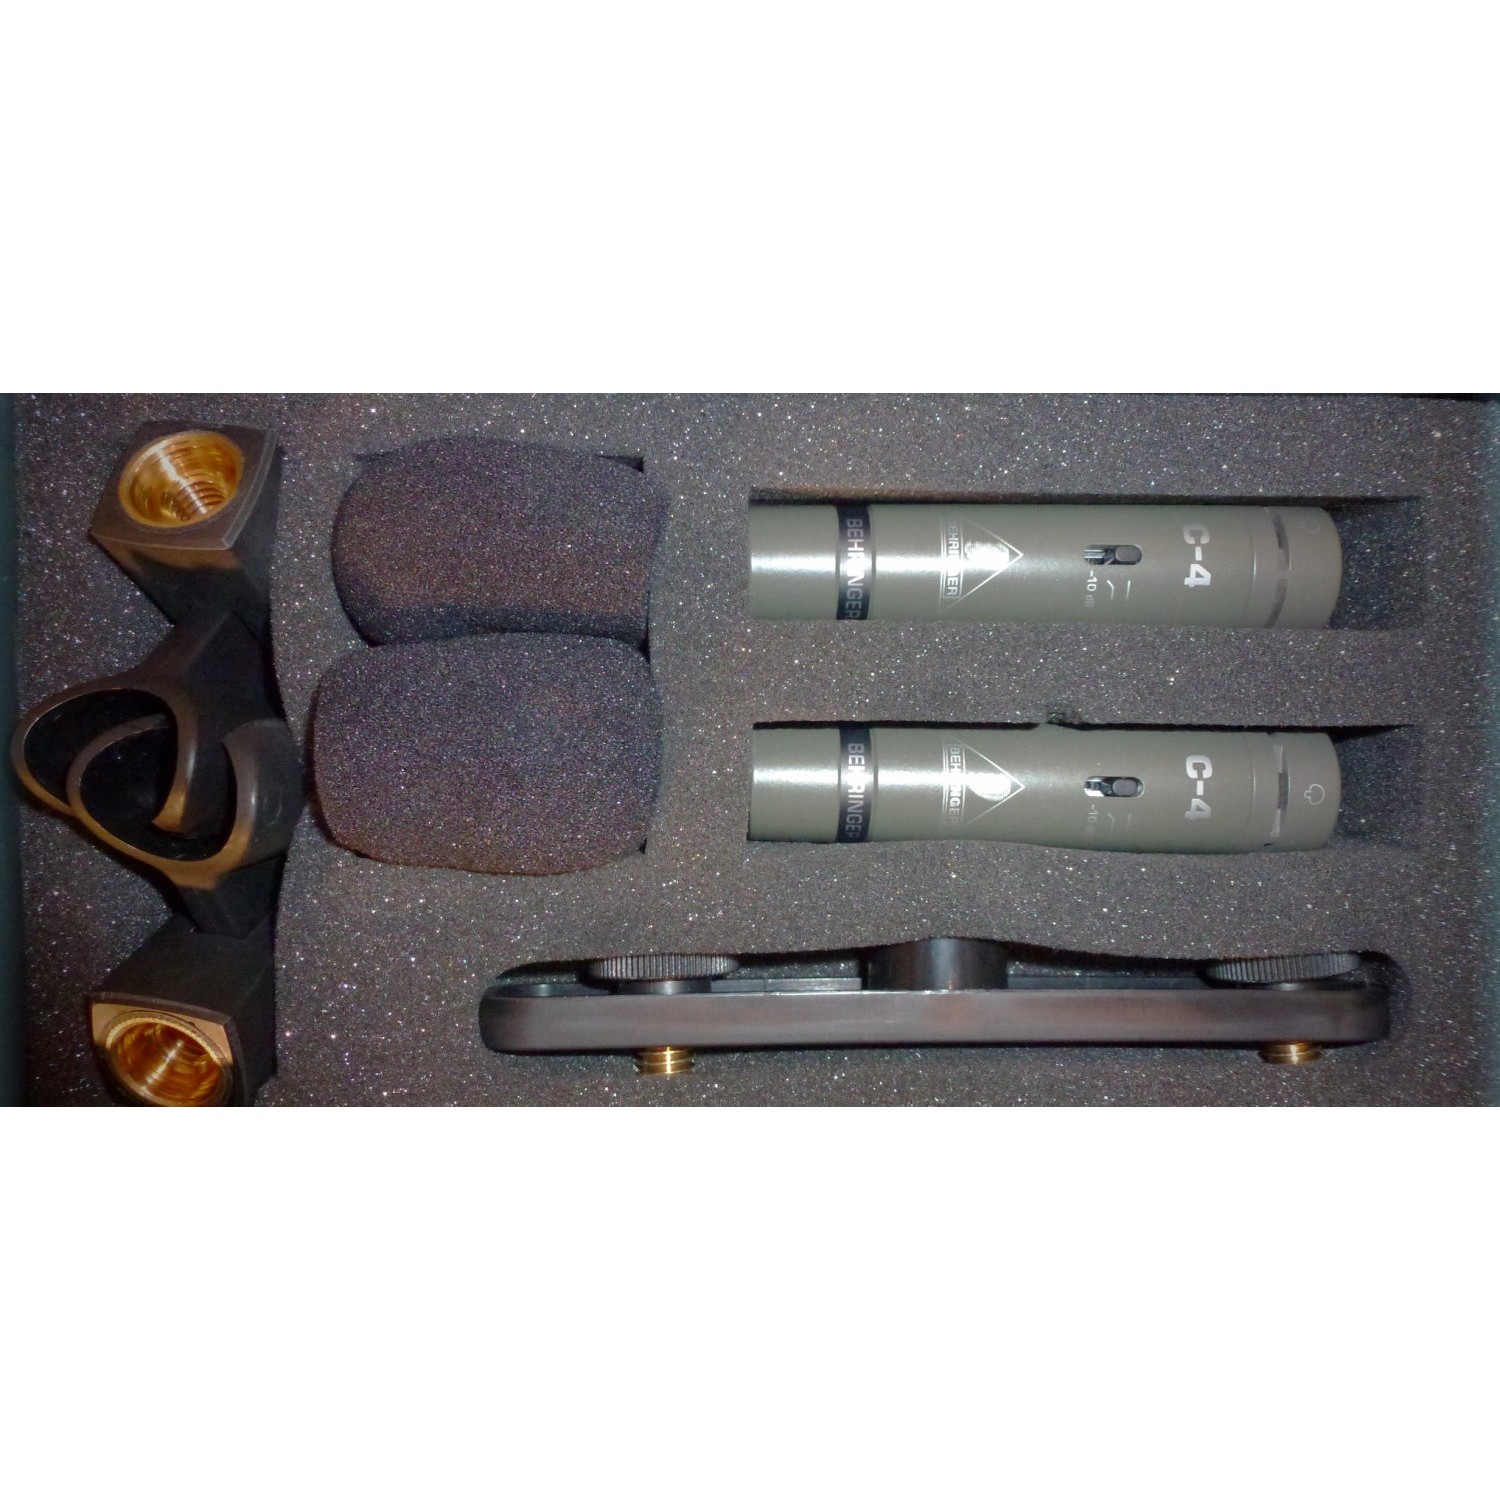 BEHRINGER C-4 single diaphragm condenser microphones комплект из 2х конденсаторных микрофонов (подоб